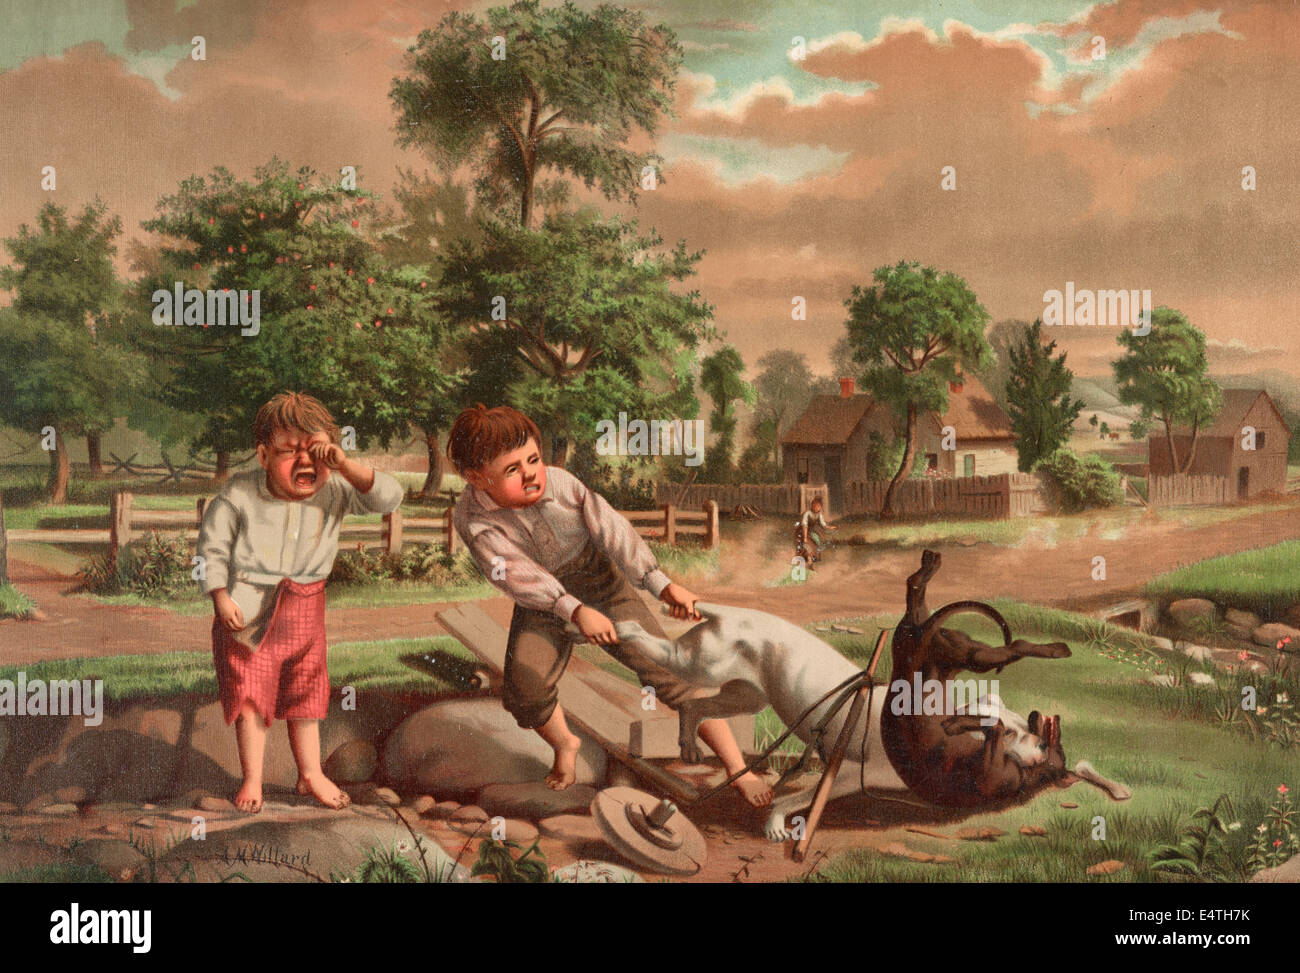 Der Stein des Anstoßes - ein kleiner Junge versucht zwei Hunde zu trennen, die kämpfen, eine zweite junge steht auf der linken Seite, zu weinen. Einer der Hunde kann auf einem kleinen Wagen ca. 1877 genutzt haben Stockfoto